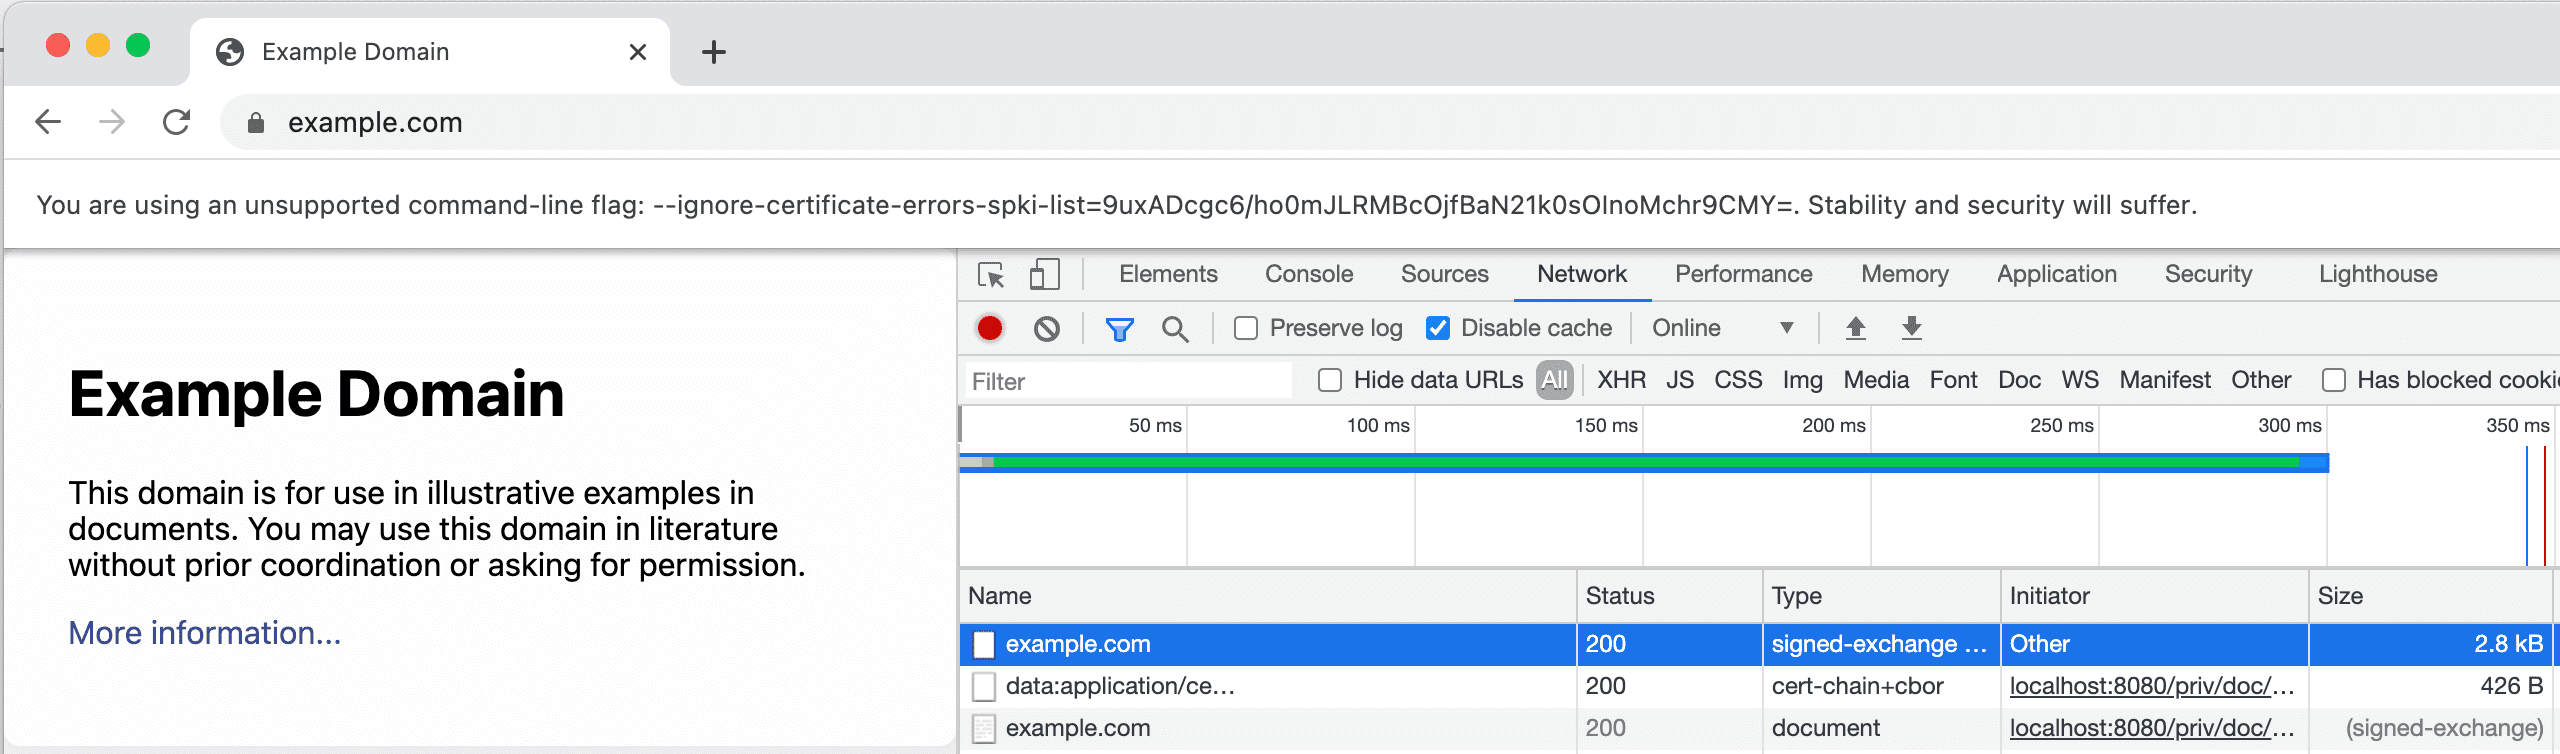 צילום מסך של הכרטיסייה DevTools Network (רשת כלי הפיתוח) שמציגה SXG והאישור שלו.